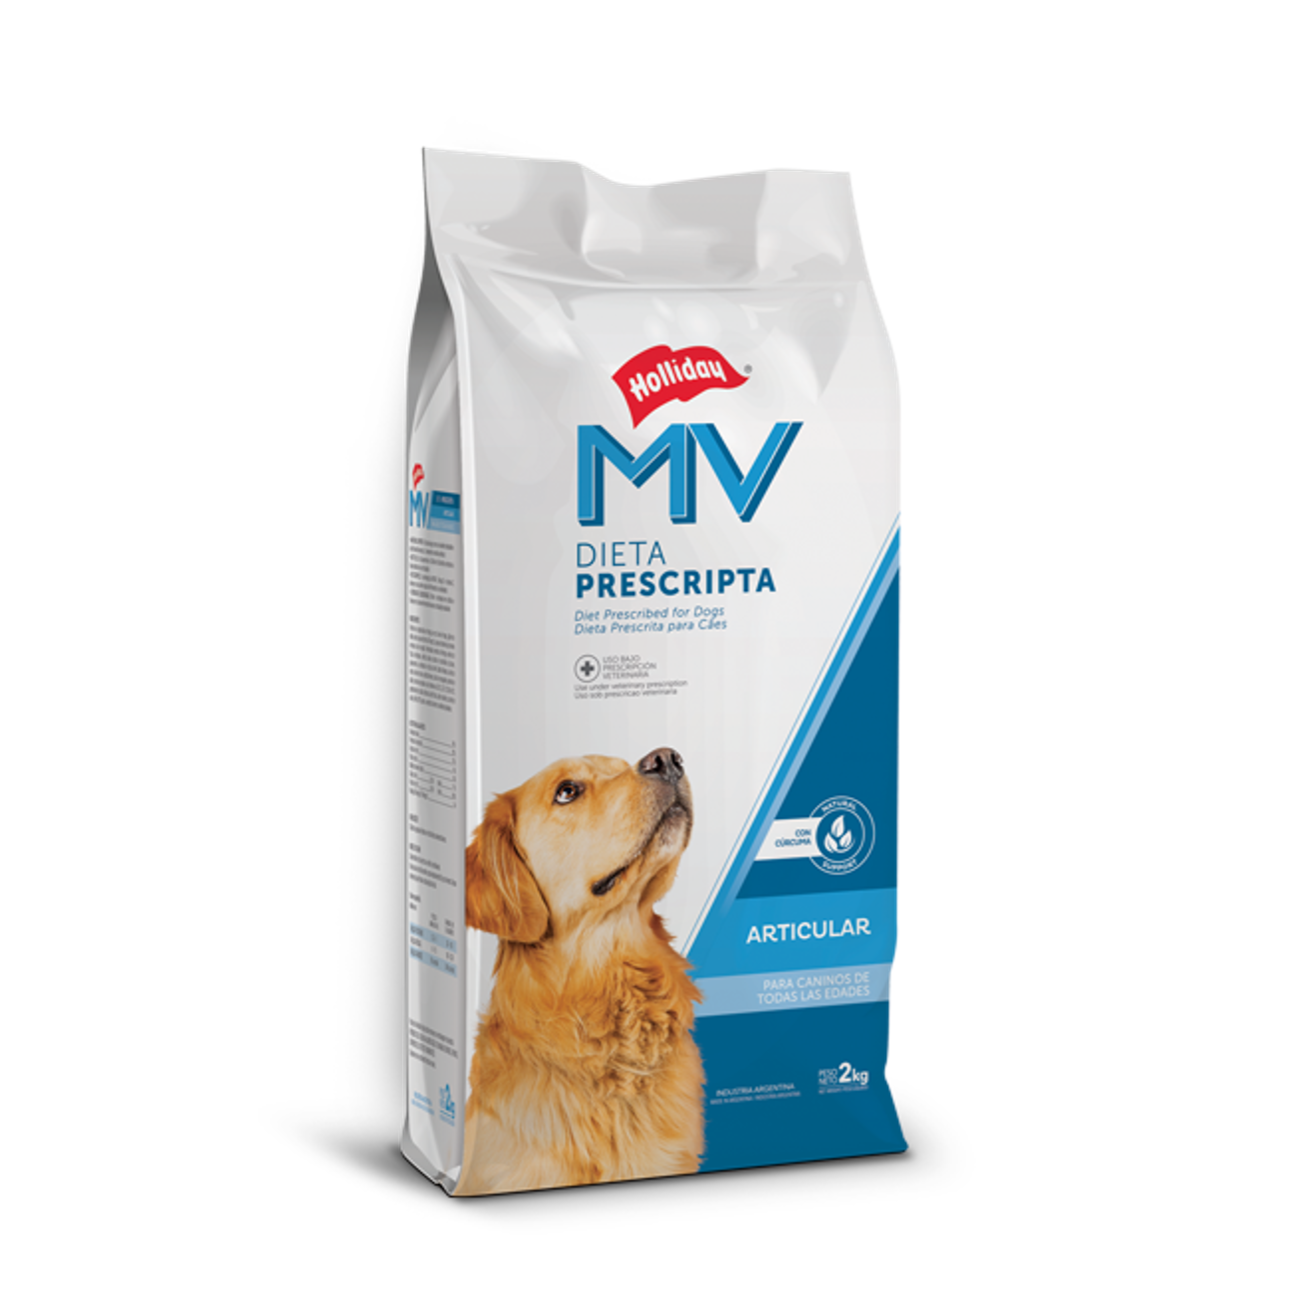 Holliday MV Articular para Perros - Alimento para Perros